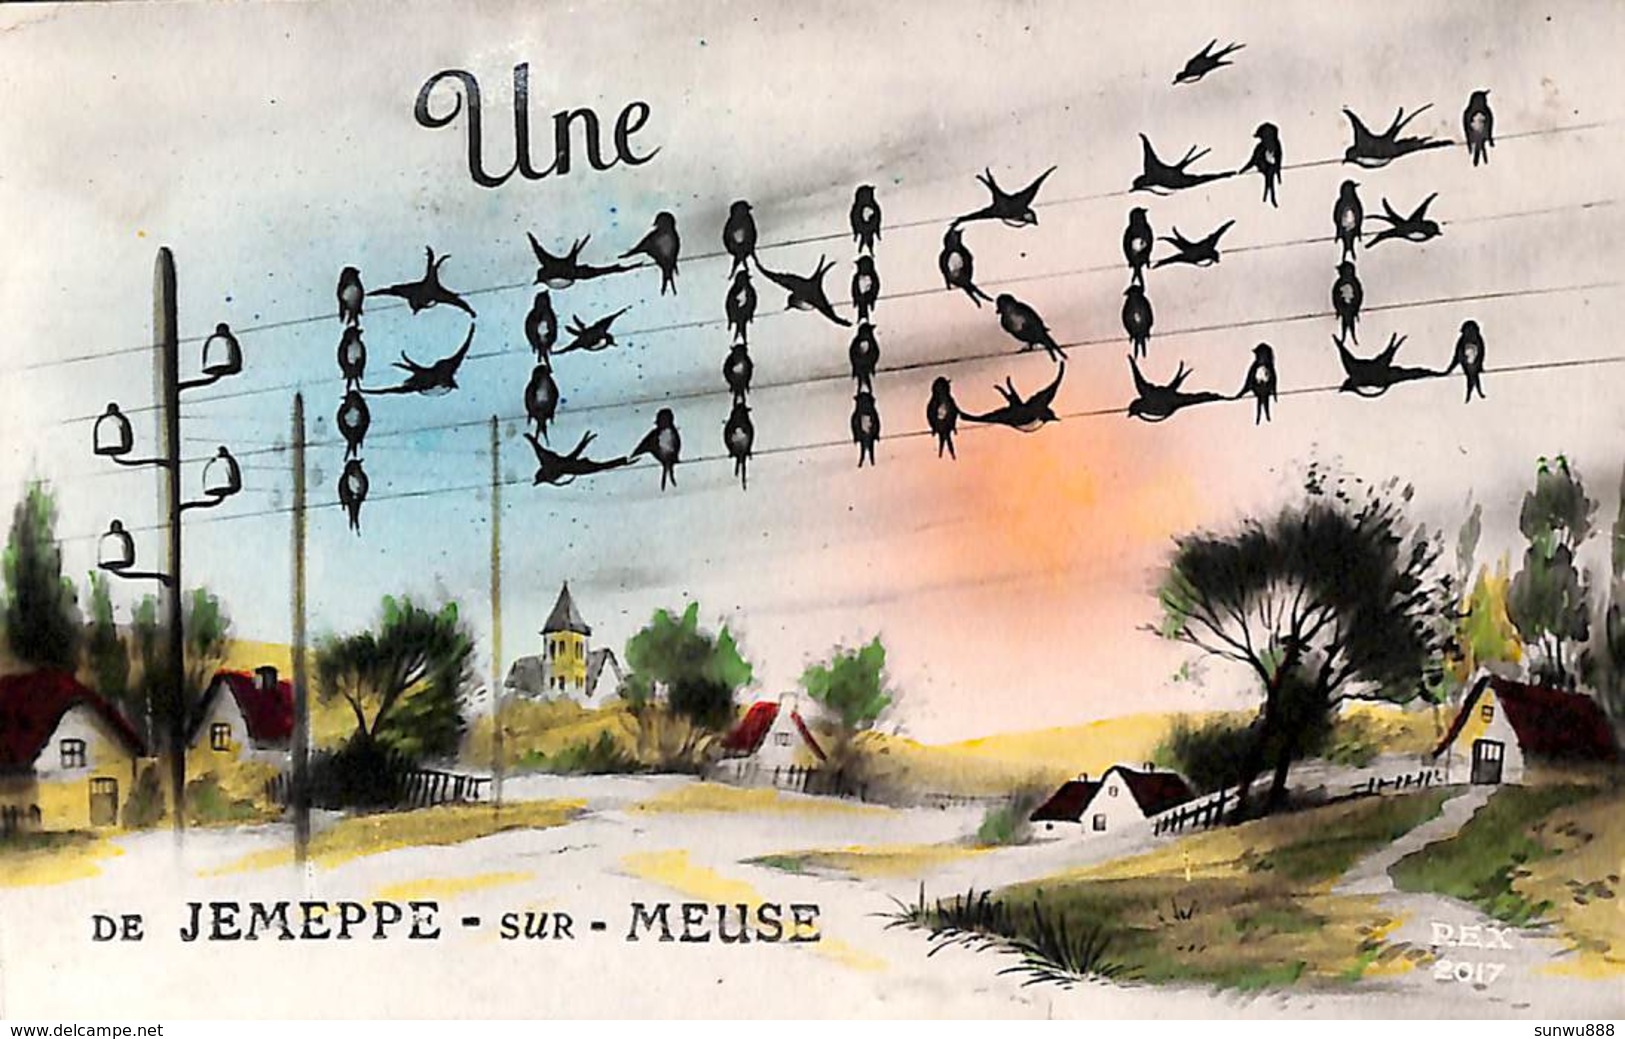 Une Pensée De Jemeppe-sur-Meuse (1951) - Seraing